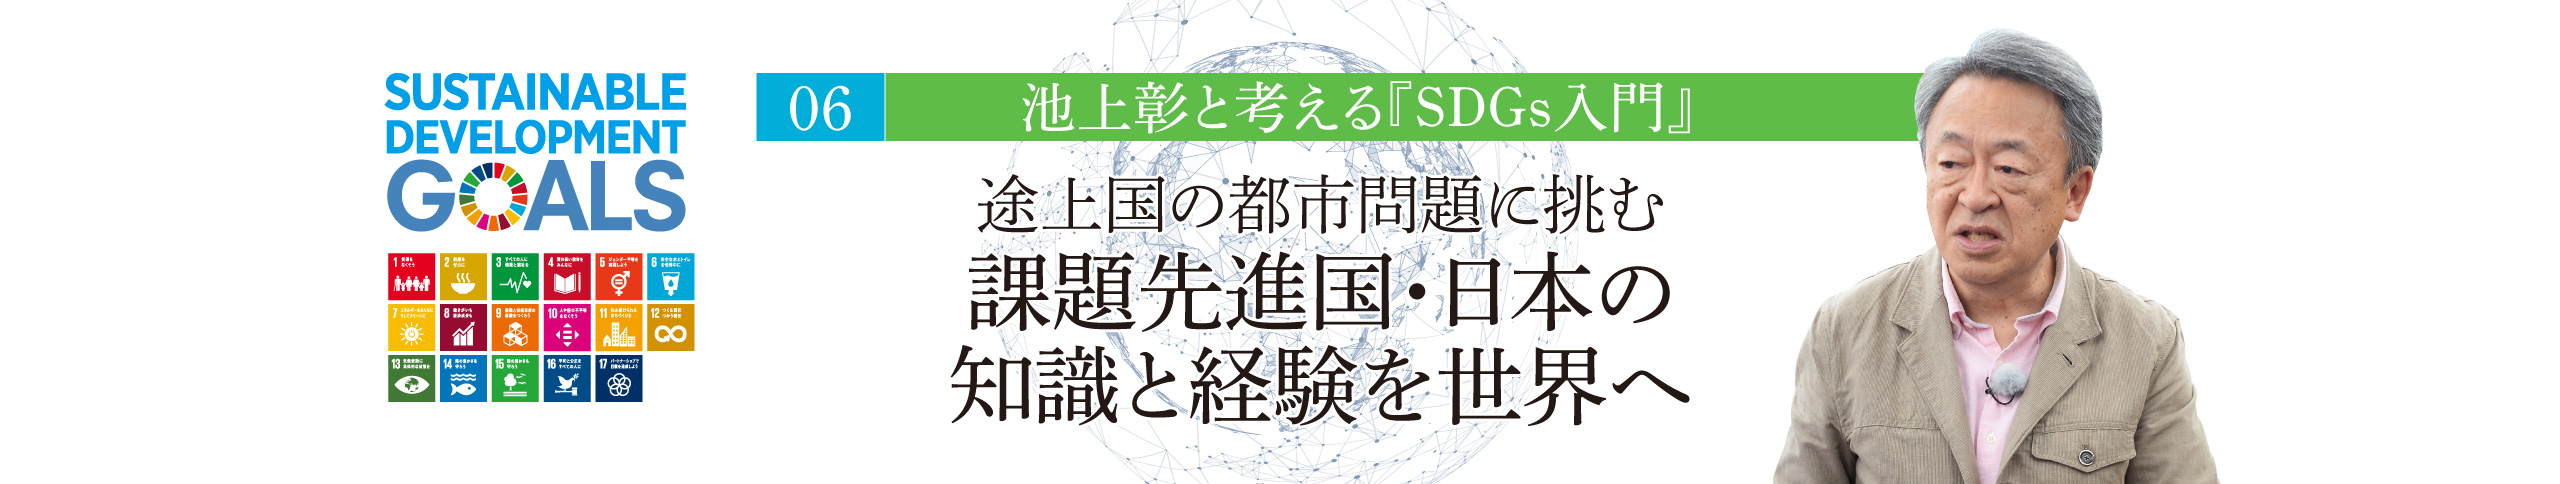 06 池上彰と考える『SDGs入門』 途上国の都市問題に挑む 課題先進国・日本の知識と経験を世界へ